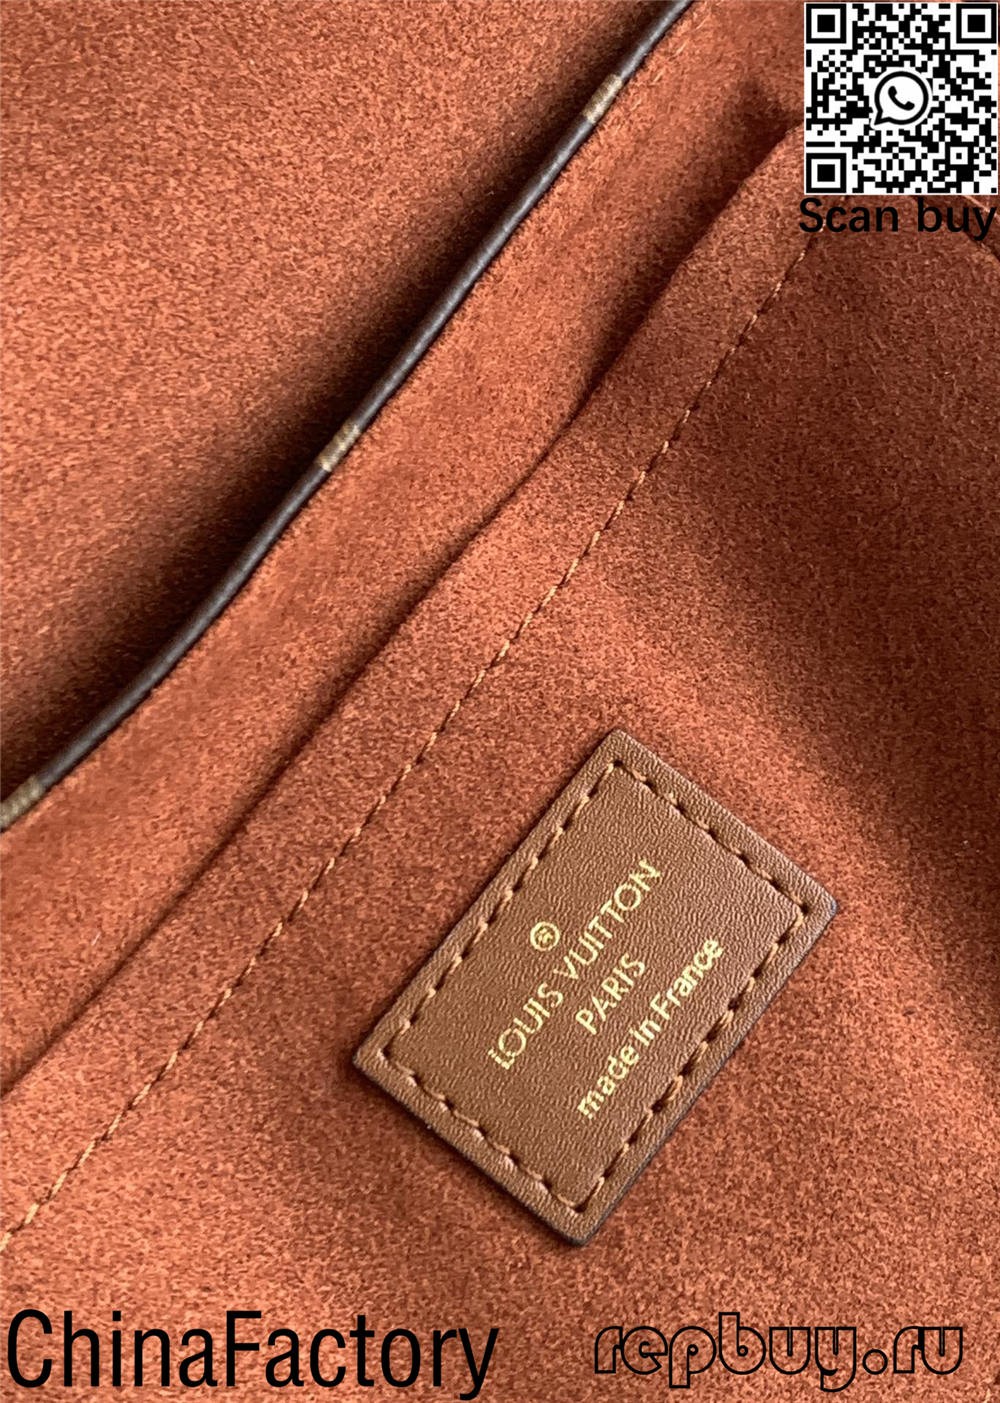 வாங்குவதற்கு லூயிஸ் உய்ட்டனின் சிறந்த 12 சிறந்த தரமான பிரதி பைகள் (2022 புதுப்பிக்கப்பட்டது)-Best Quality Fake Louis Vuitton Bag Online Store, Replica designer bag ru